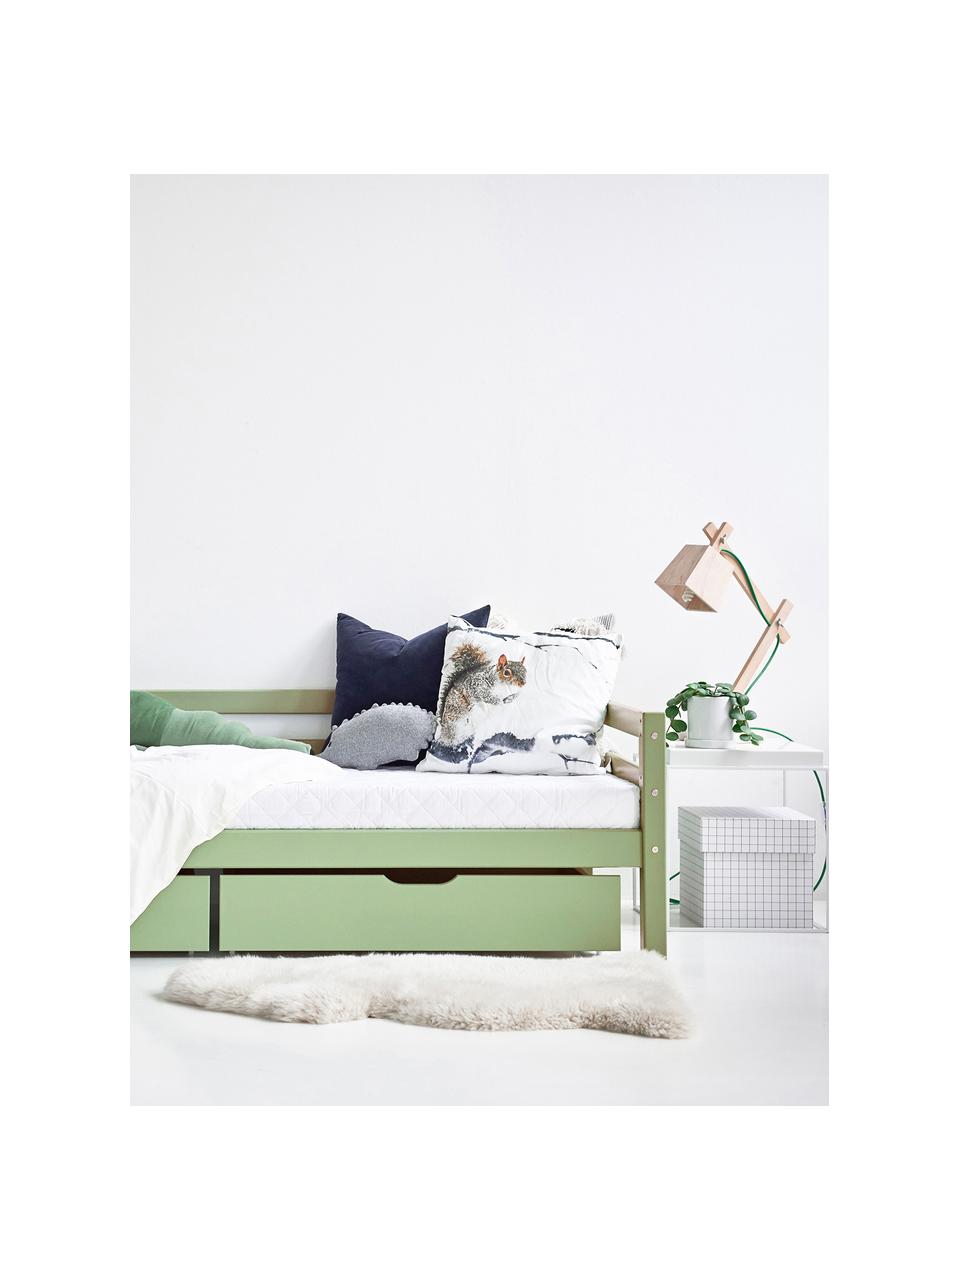 Kinderbett Eco Dream aus Kiefernholz, 90 x 200 cm, Massives Kiefernholz, FSC-zertifiziert, Schichtholz, Grün, B 90 x L 200 cm